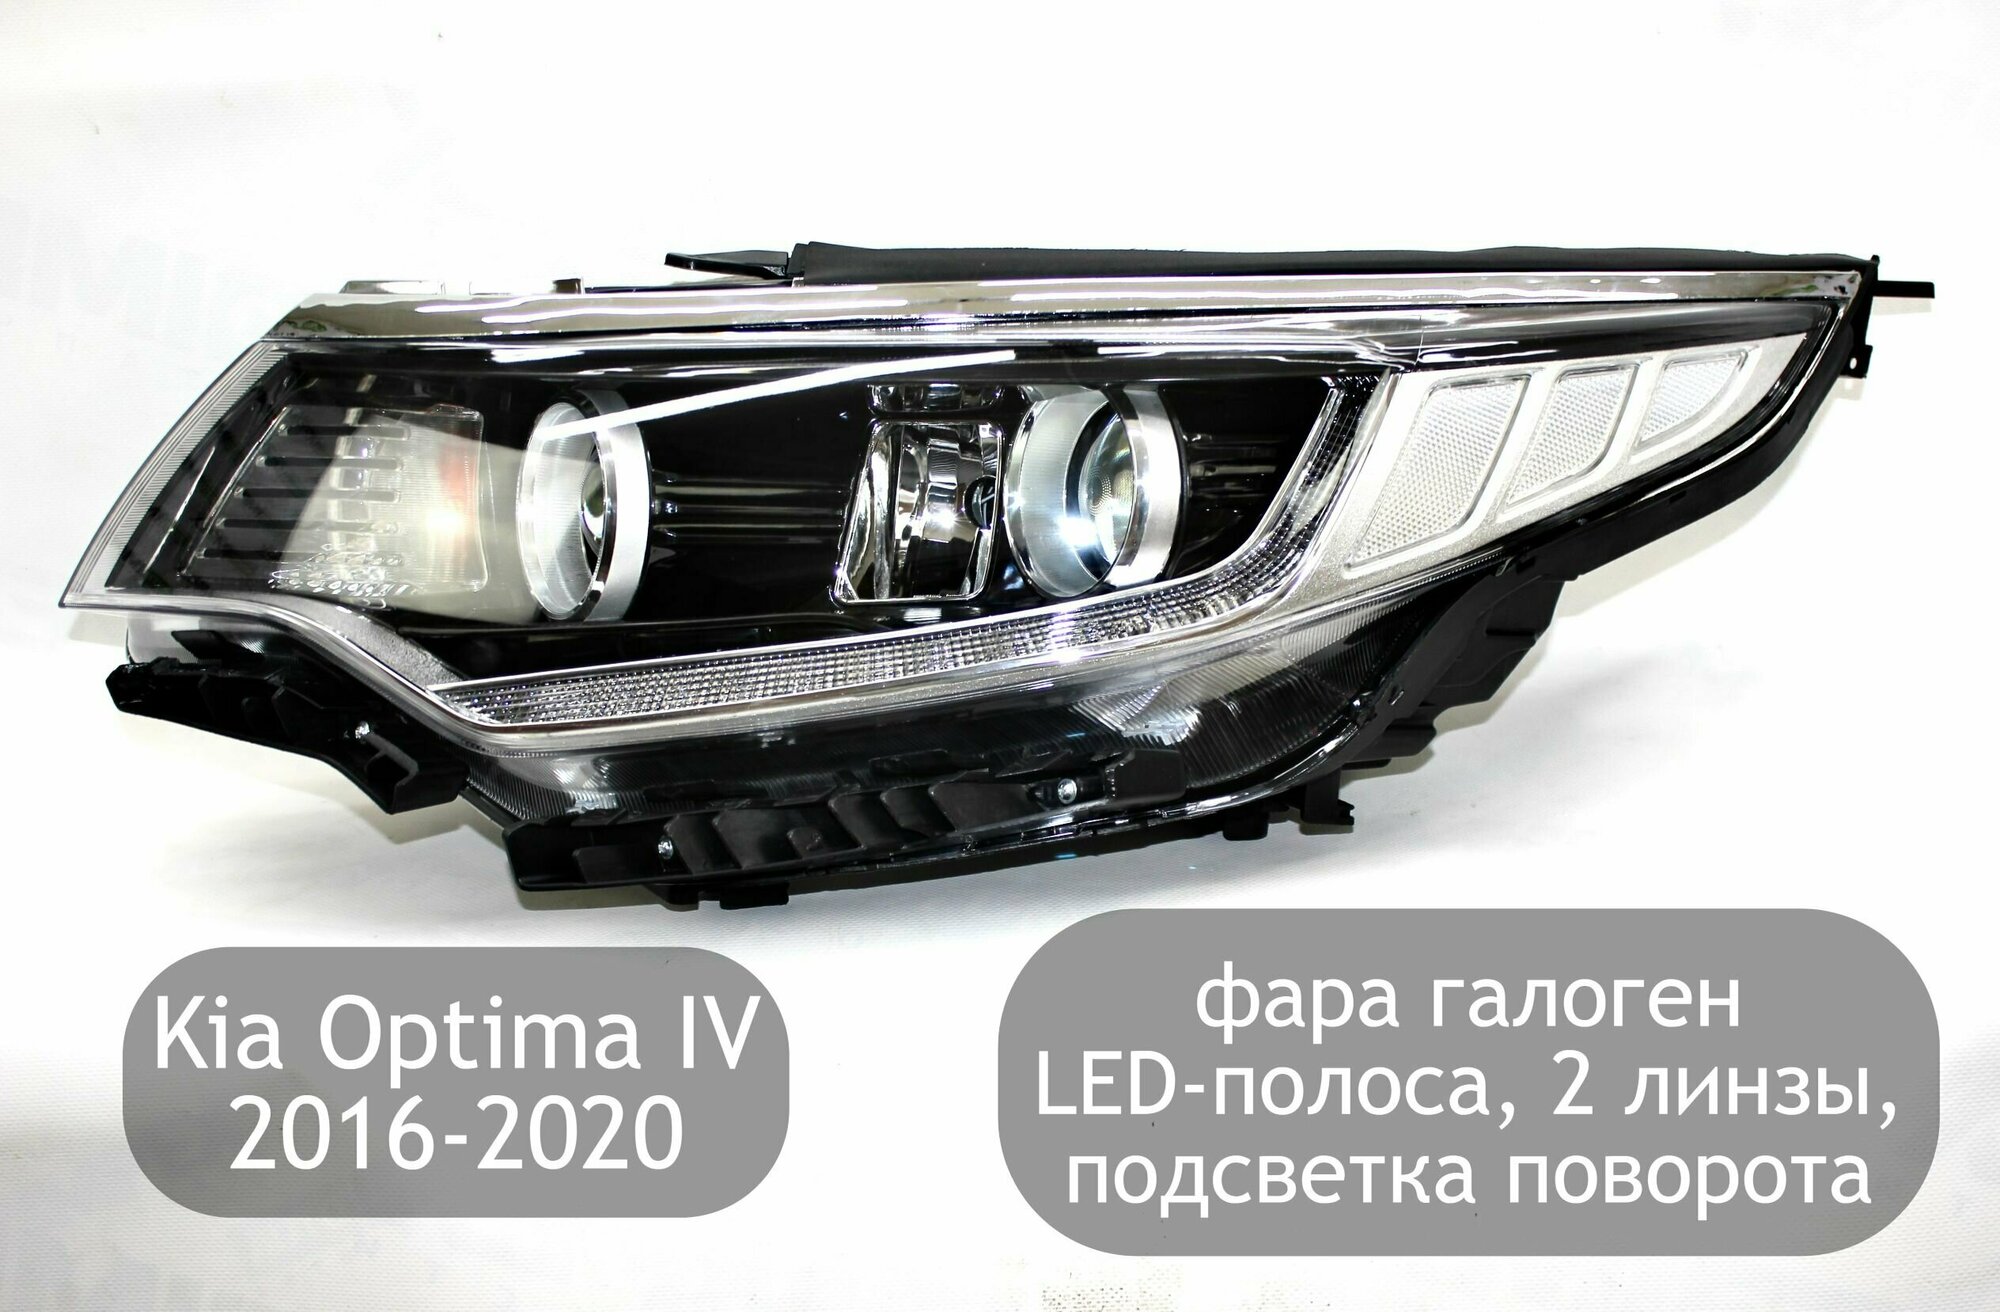 Фара левая галоген с LED-полосой 2 линзы и подсветка поворота для Kia Optima 4 2016-2020 (дорестайлинг и рестайлинг)